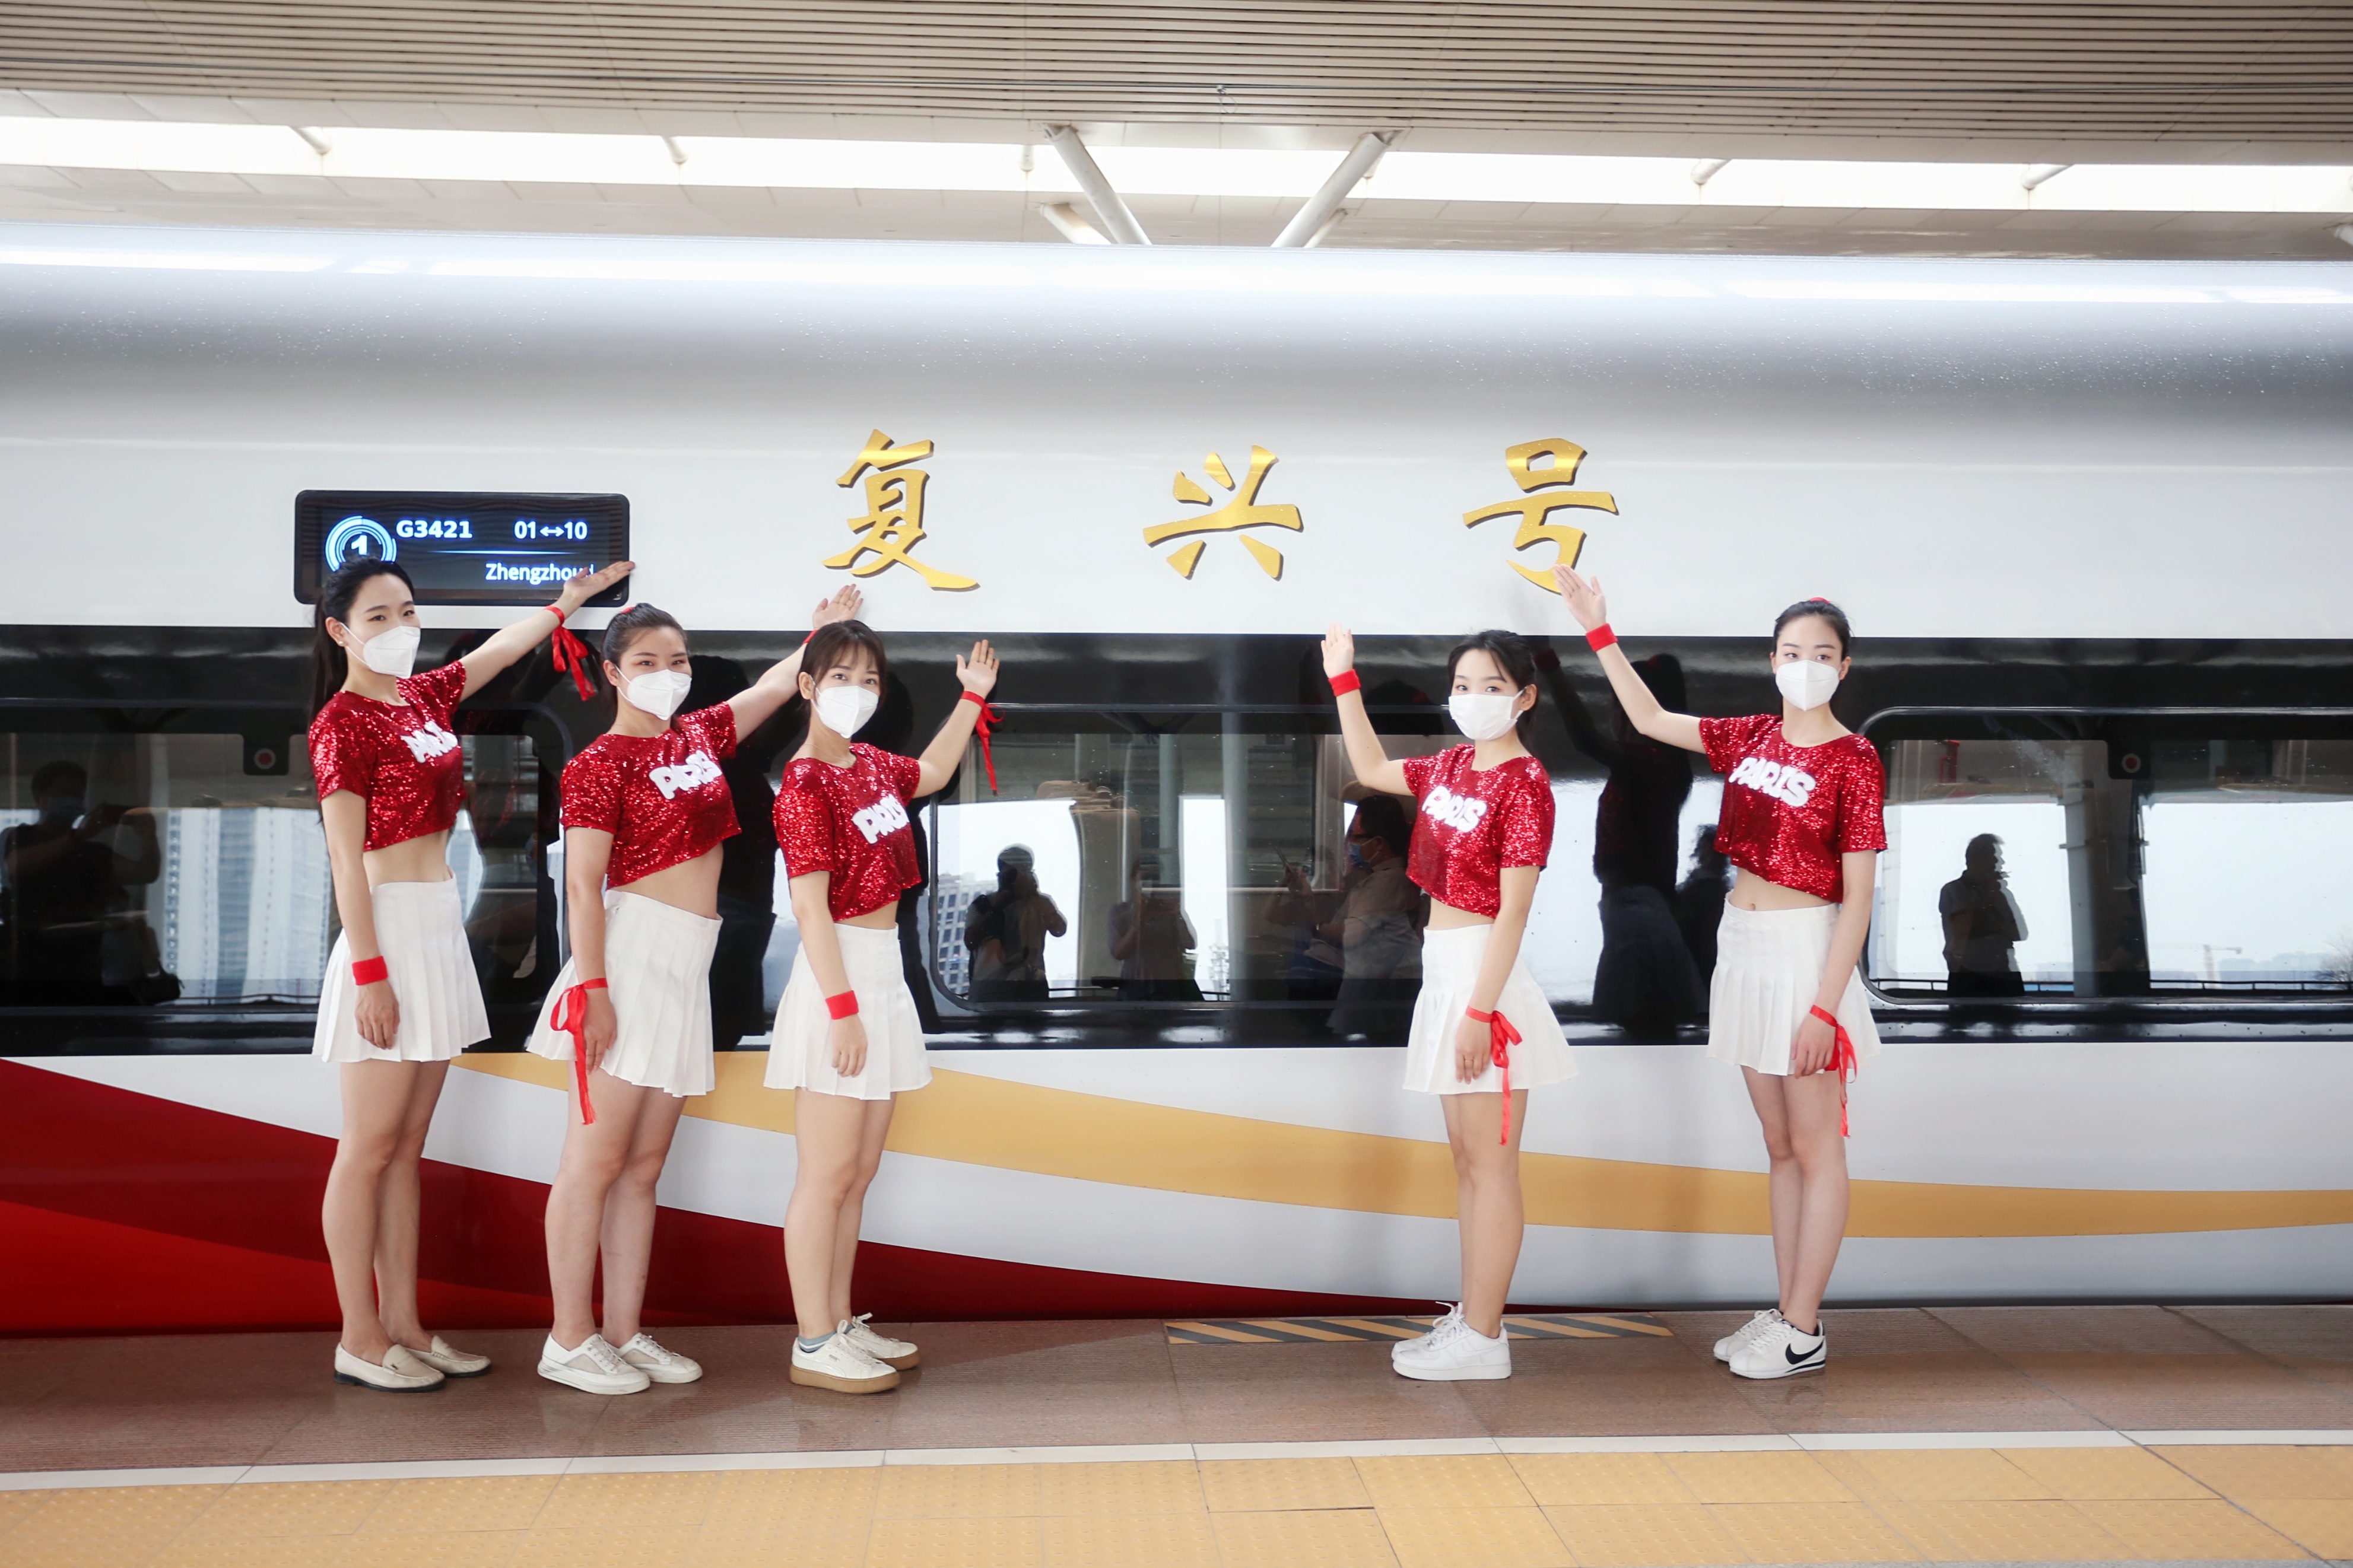 郑州铁路新添智能高铁让旅客体验智能旅途